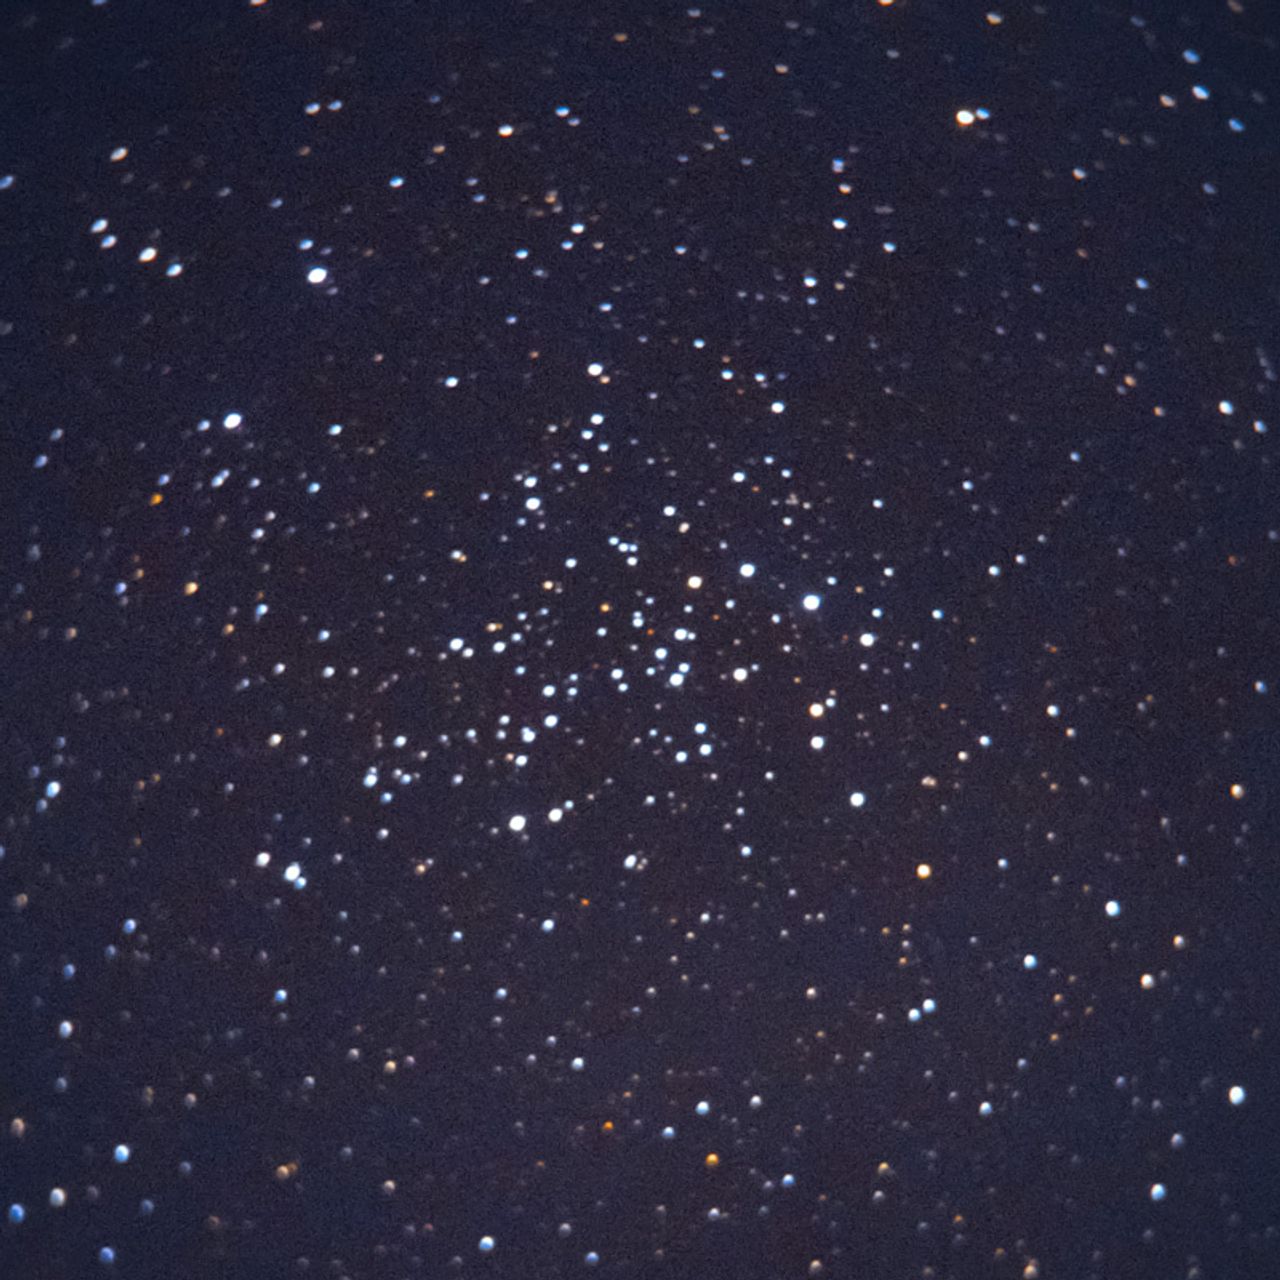 NGC1528